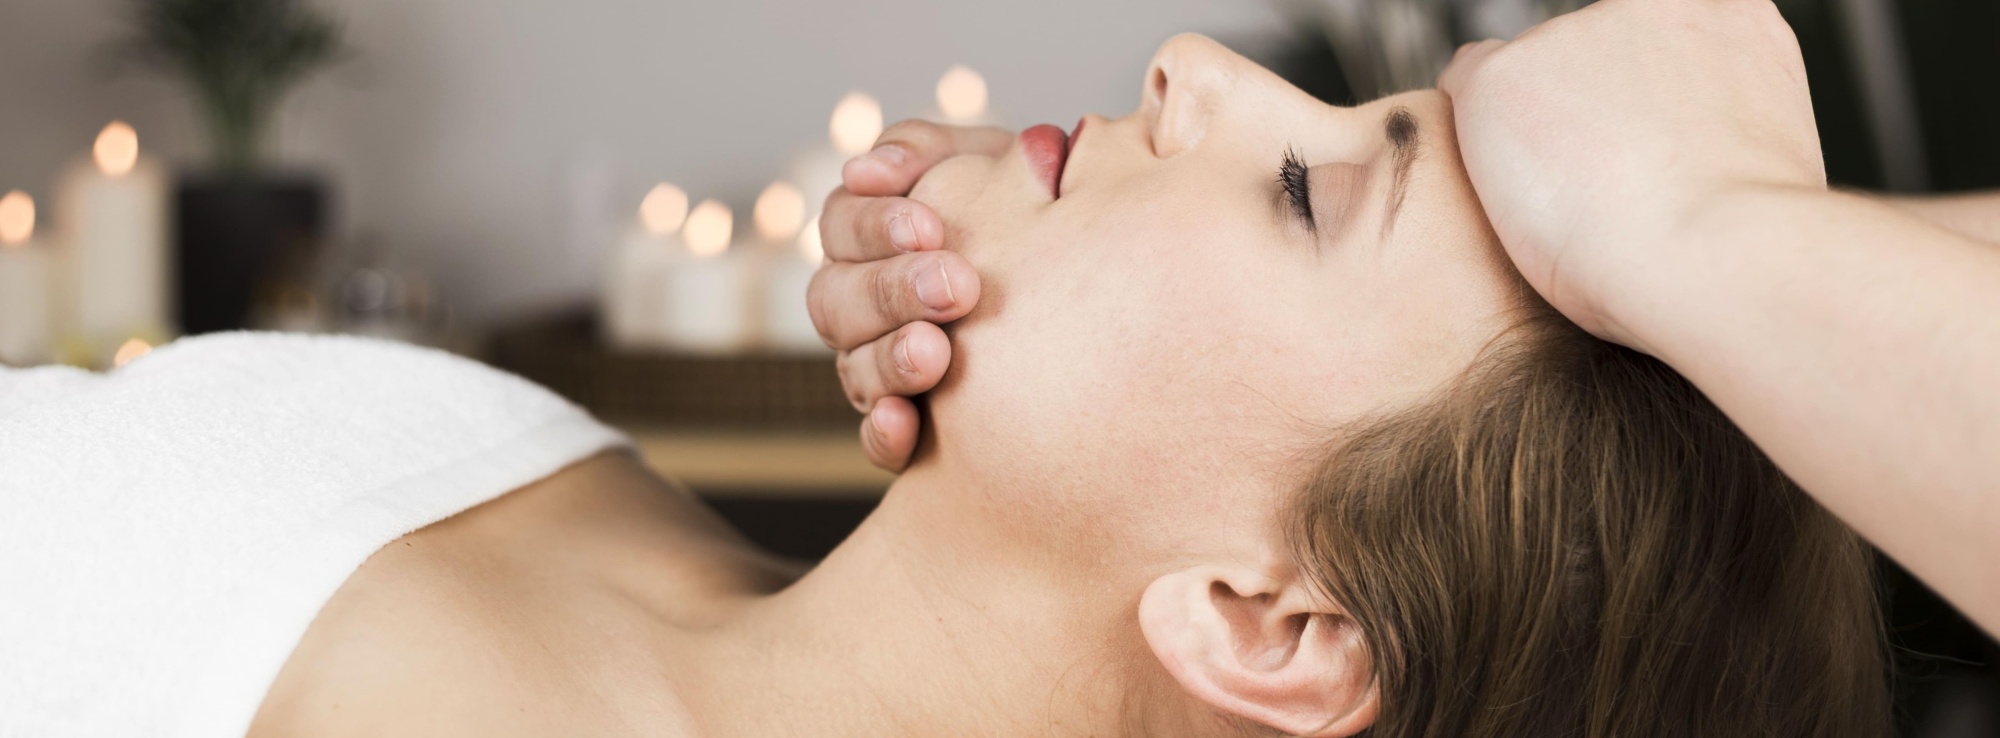 Гинекологический массаж, как метод лечения и профилактики женских недугов